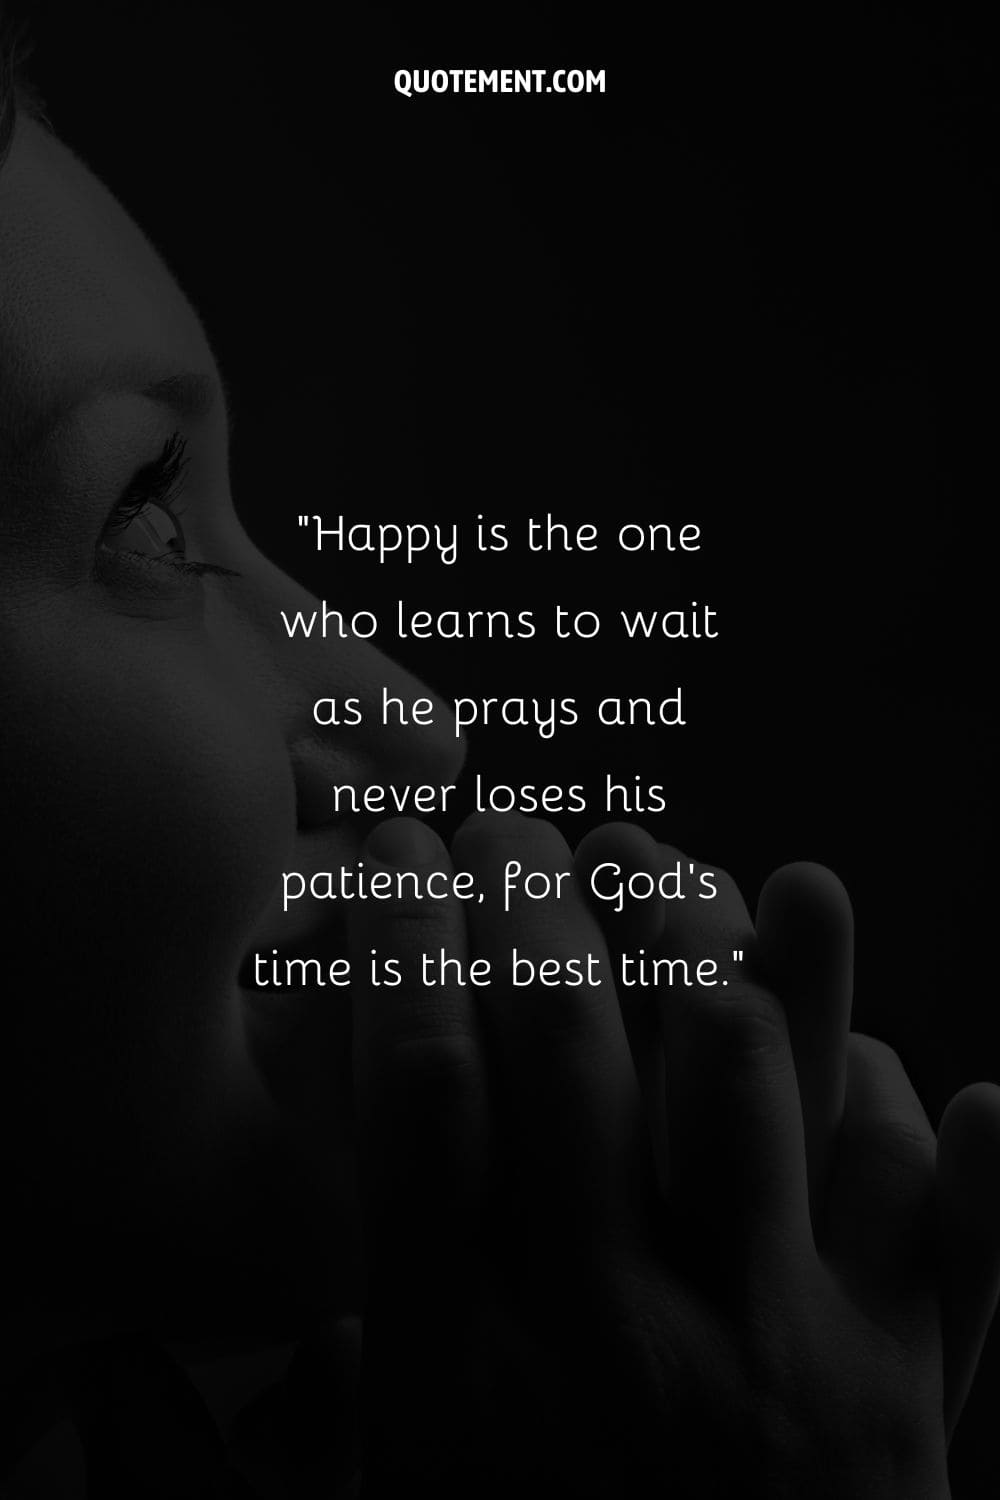 La imagen de una persona rezando pacíficamente representando el tiempo de Dios es la cita perfecta.